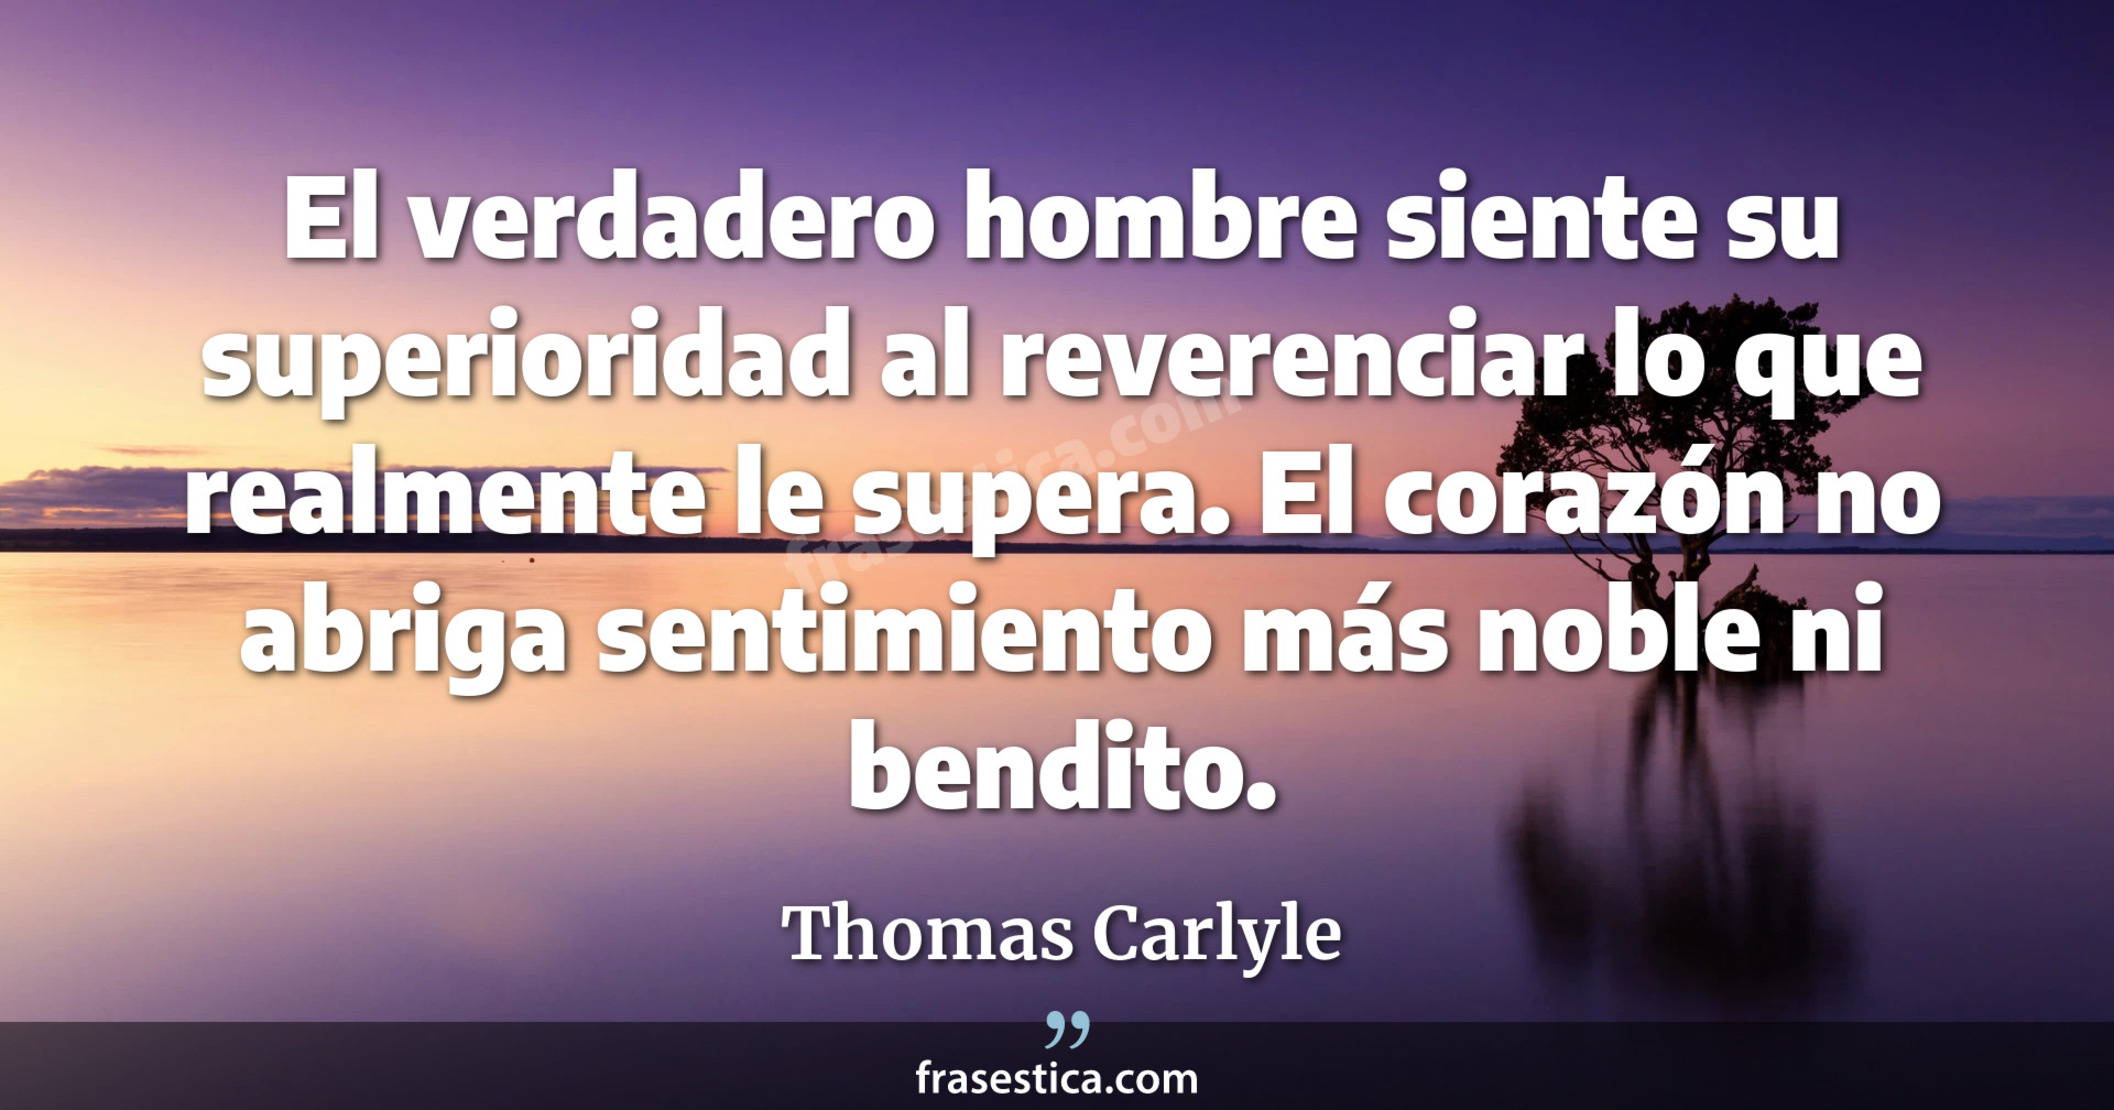 El verdadero hombre siente su superioridad al reverenciar lo que realmente le supera. El corazón no abriga sentimiento más noble ni bendito. - Thomas Carlyle